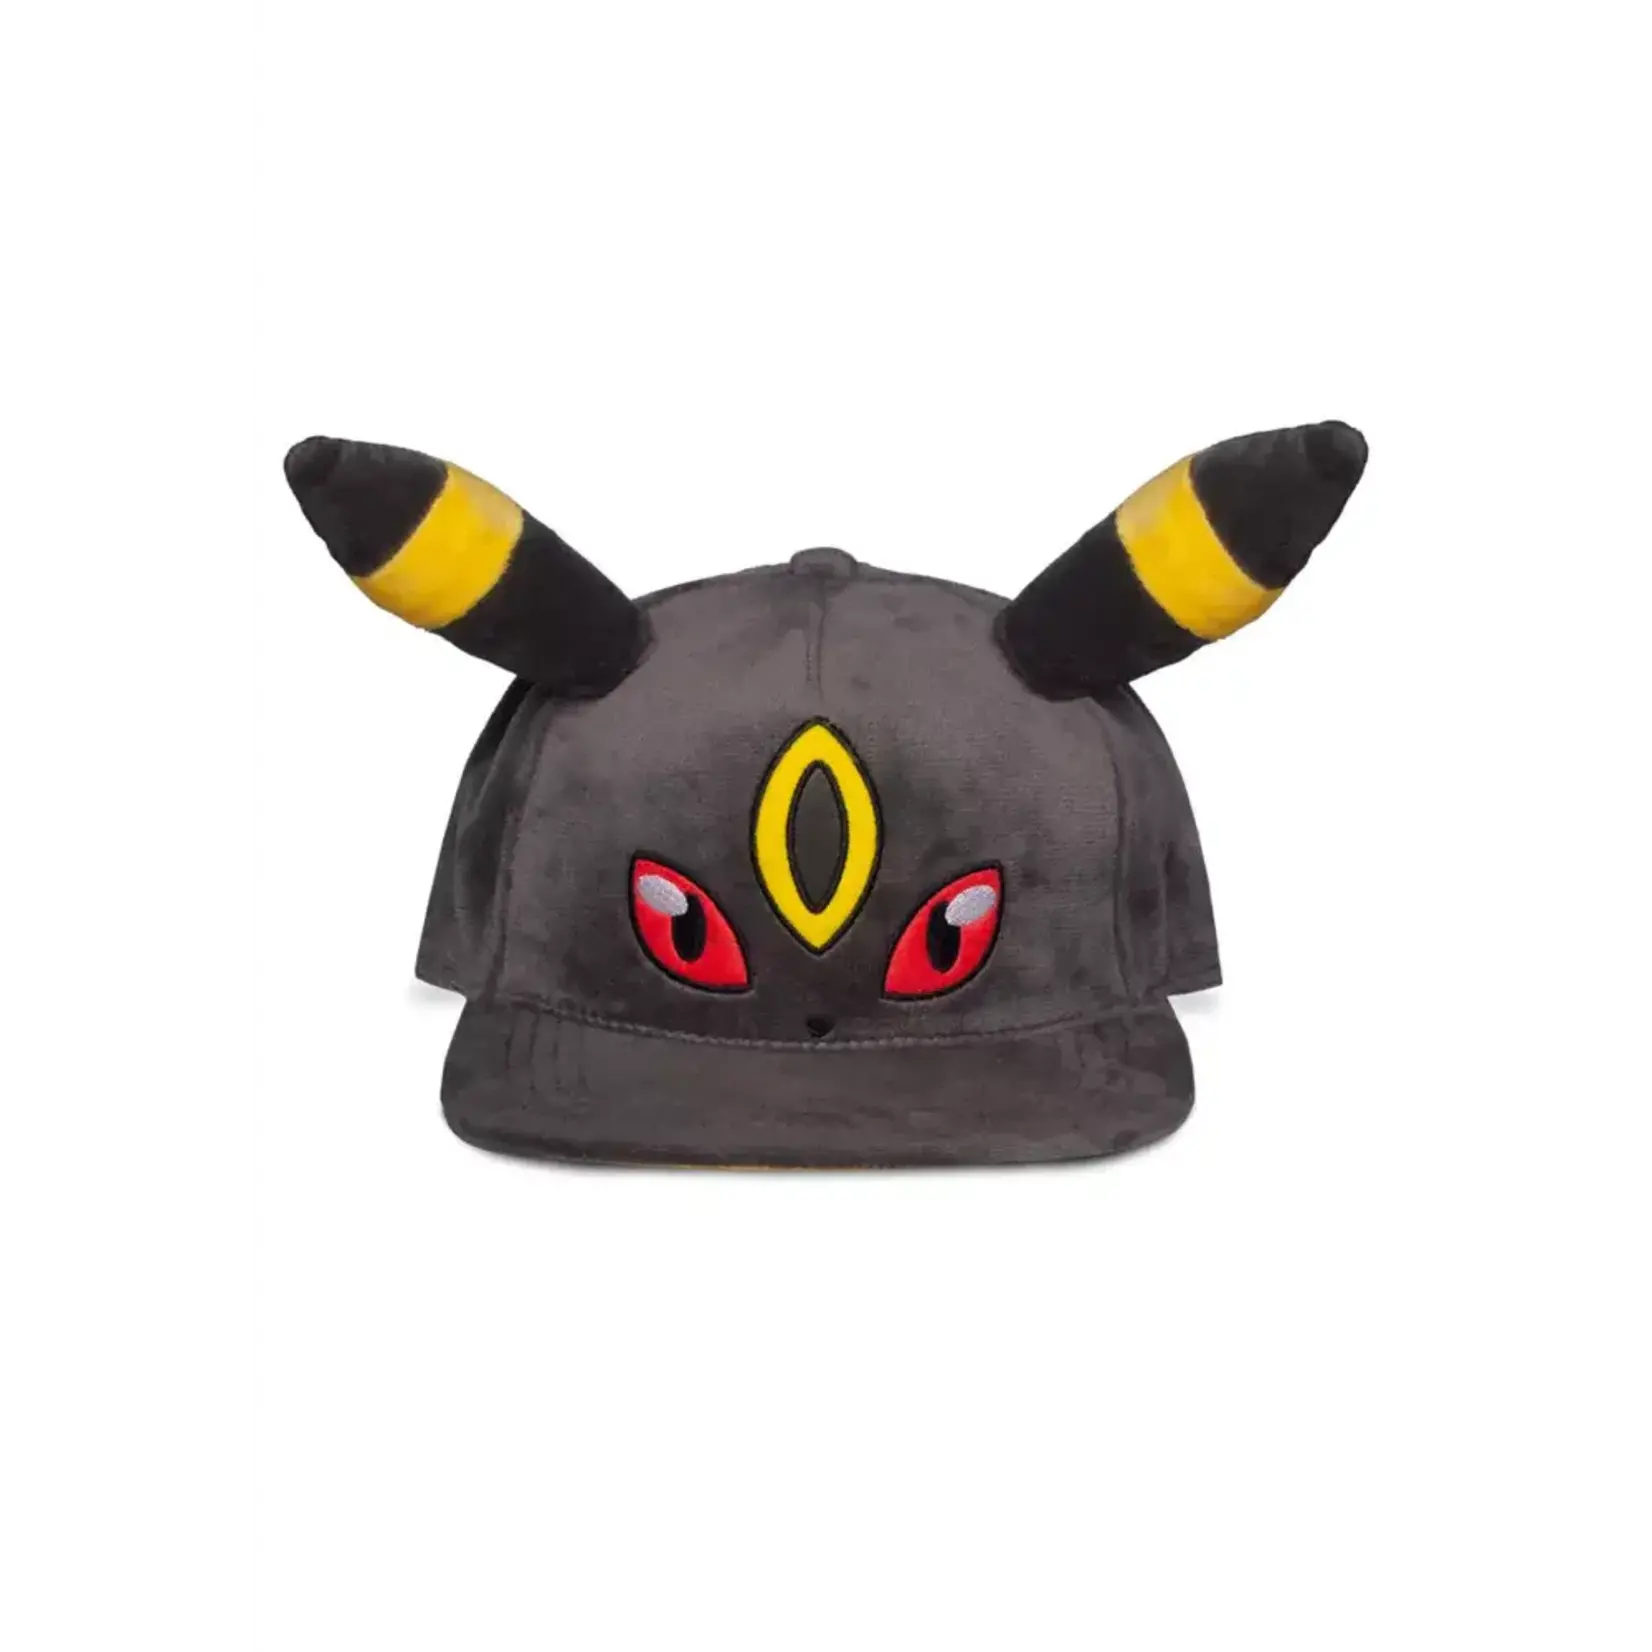 Pokémon Pokémon – Umbreon Plush Plush Cap